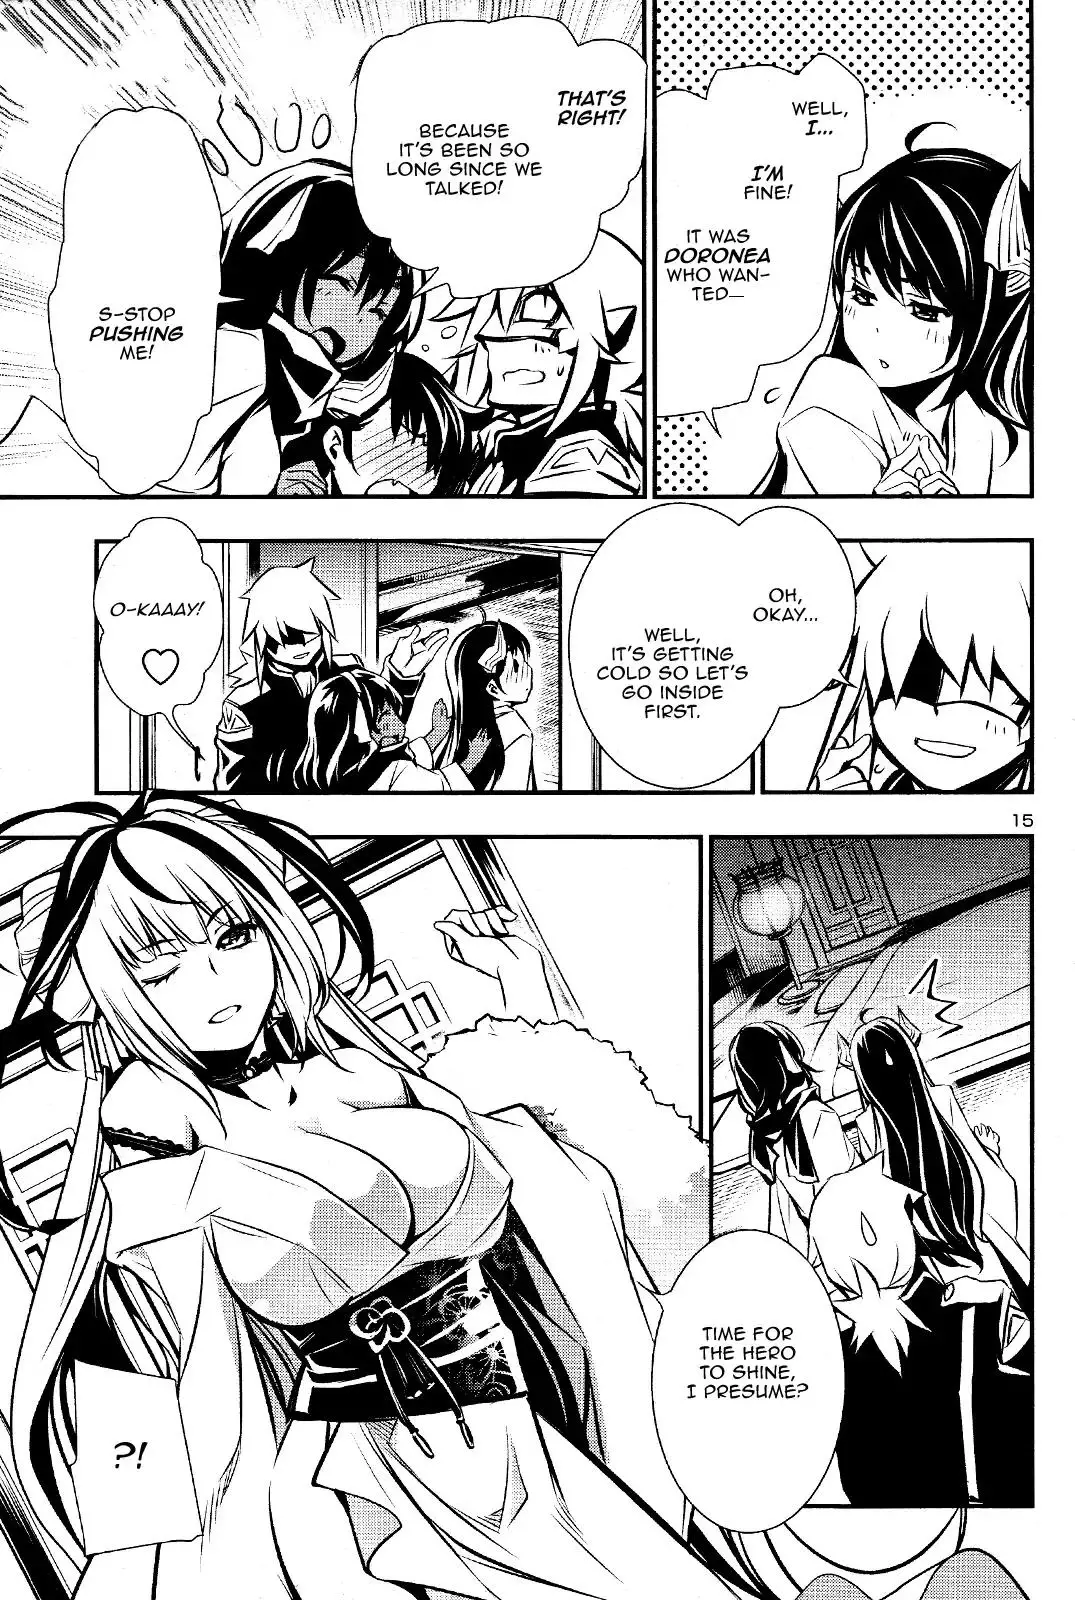 Shinju no Nectar - 29 page 15